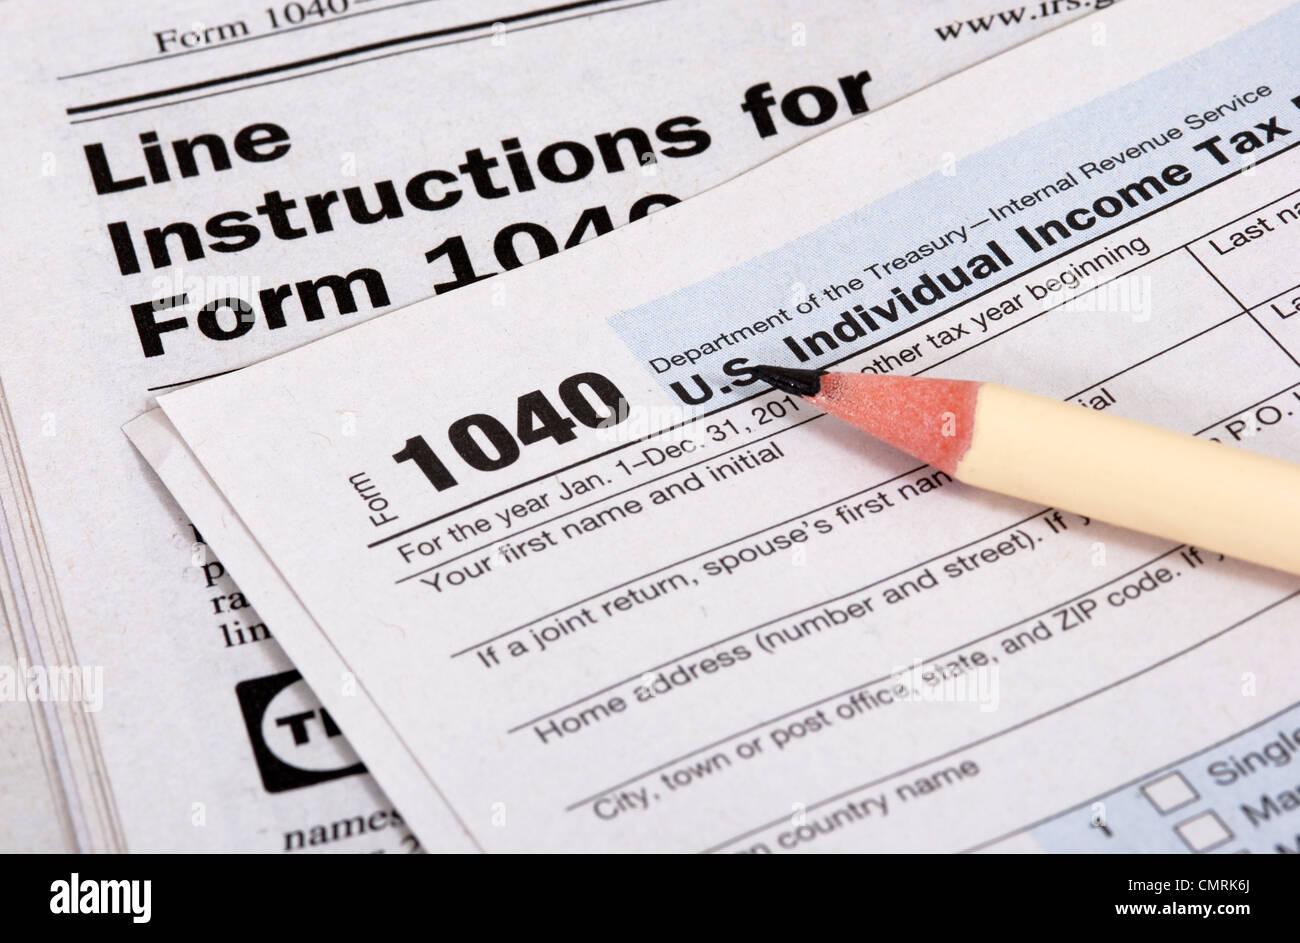 Cierre el formulario de impuestos de los Estados Unidos, el libro de instrucciones y lápiz Foto de stock